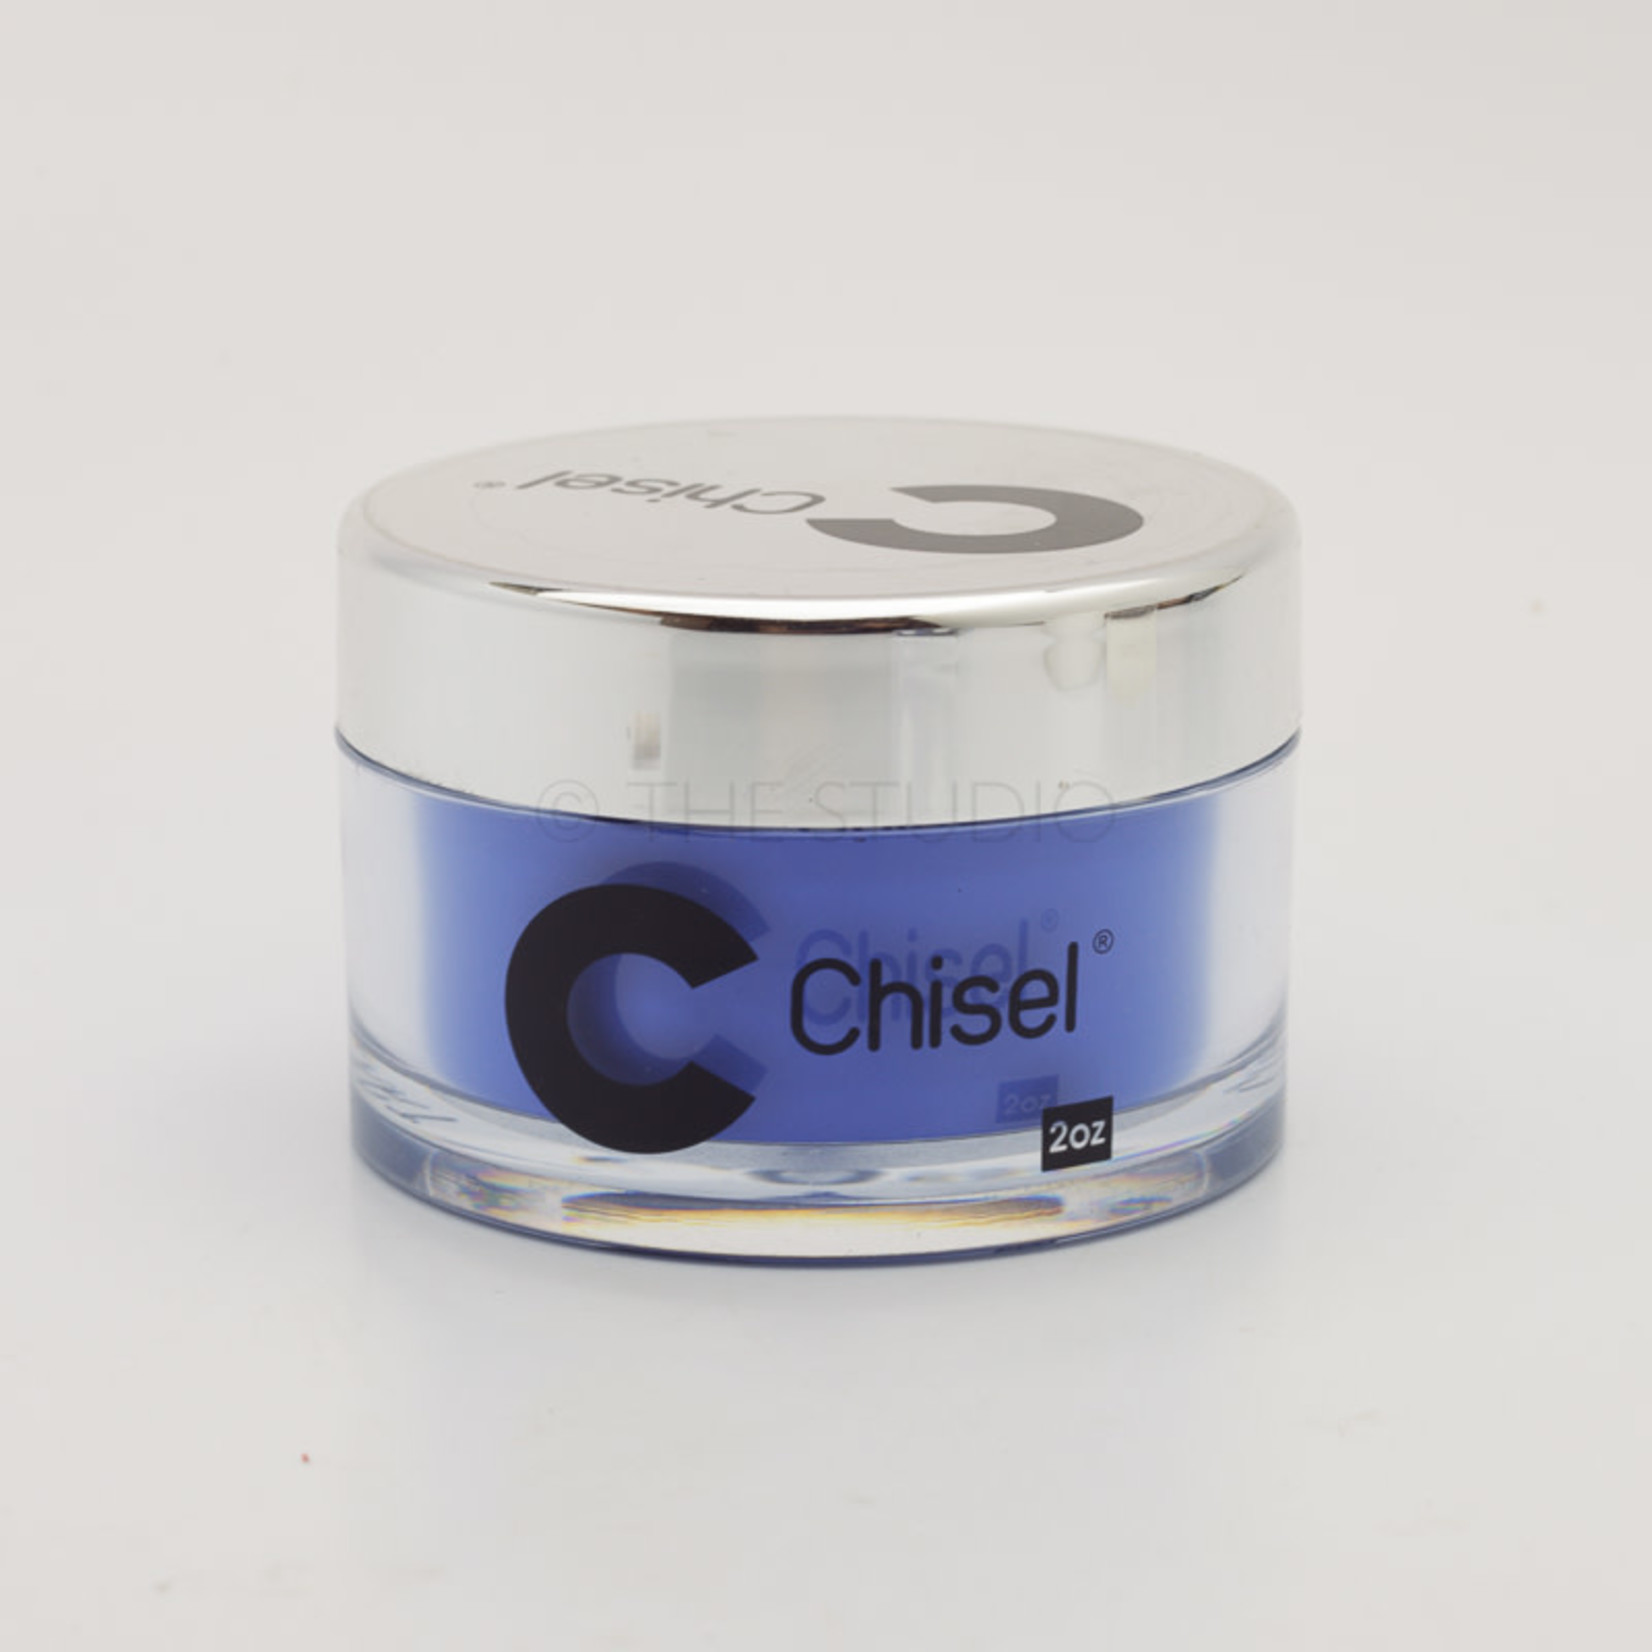 Chisel Chisel - Solid 013 - AIO Powder - 2 oz